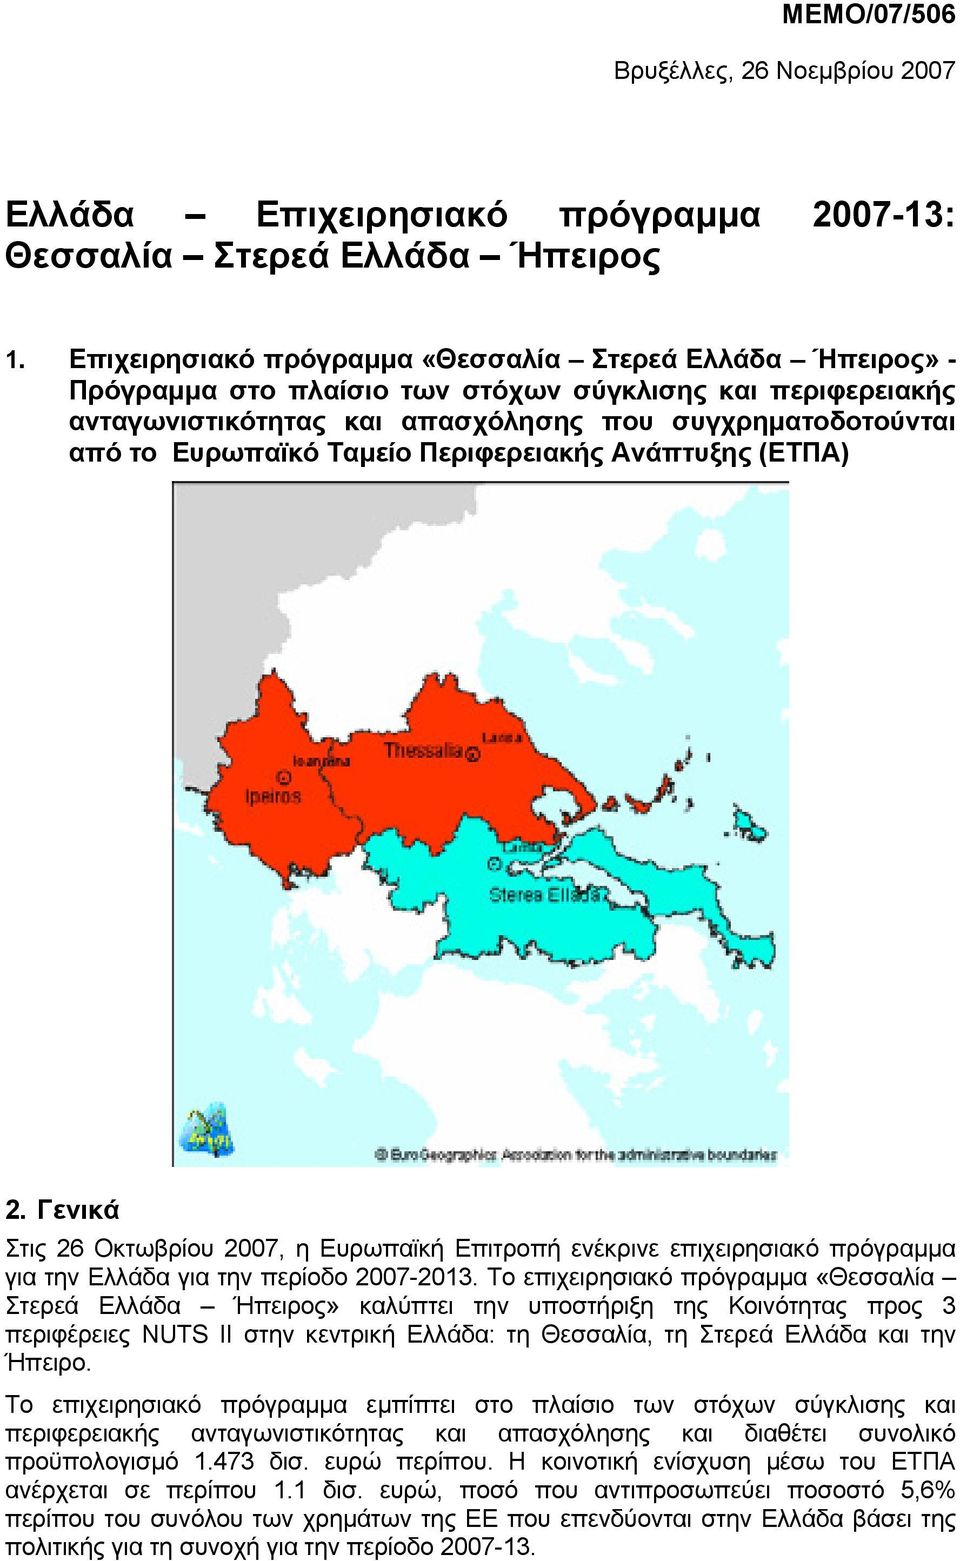 Ταµείο Περιφερειακής Ανάπτυξης (ΕΤΠΑ) 2. Γενικά Στις 26 Οκτωβρίου 2007, η Ευρωπαϊκή Επιτροπή ενέκρινε επιχειρησιακό πρόγραµµα για την Ελλάδα για την περίοδο 2007-2013.